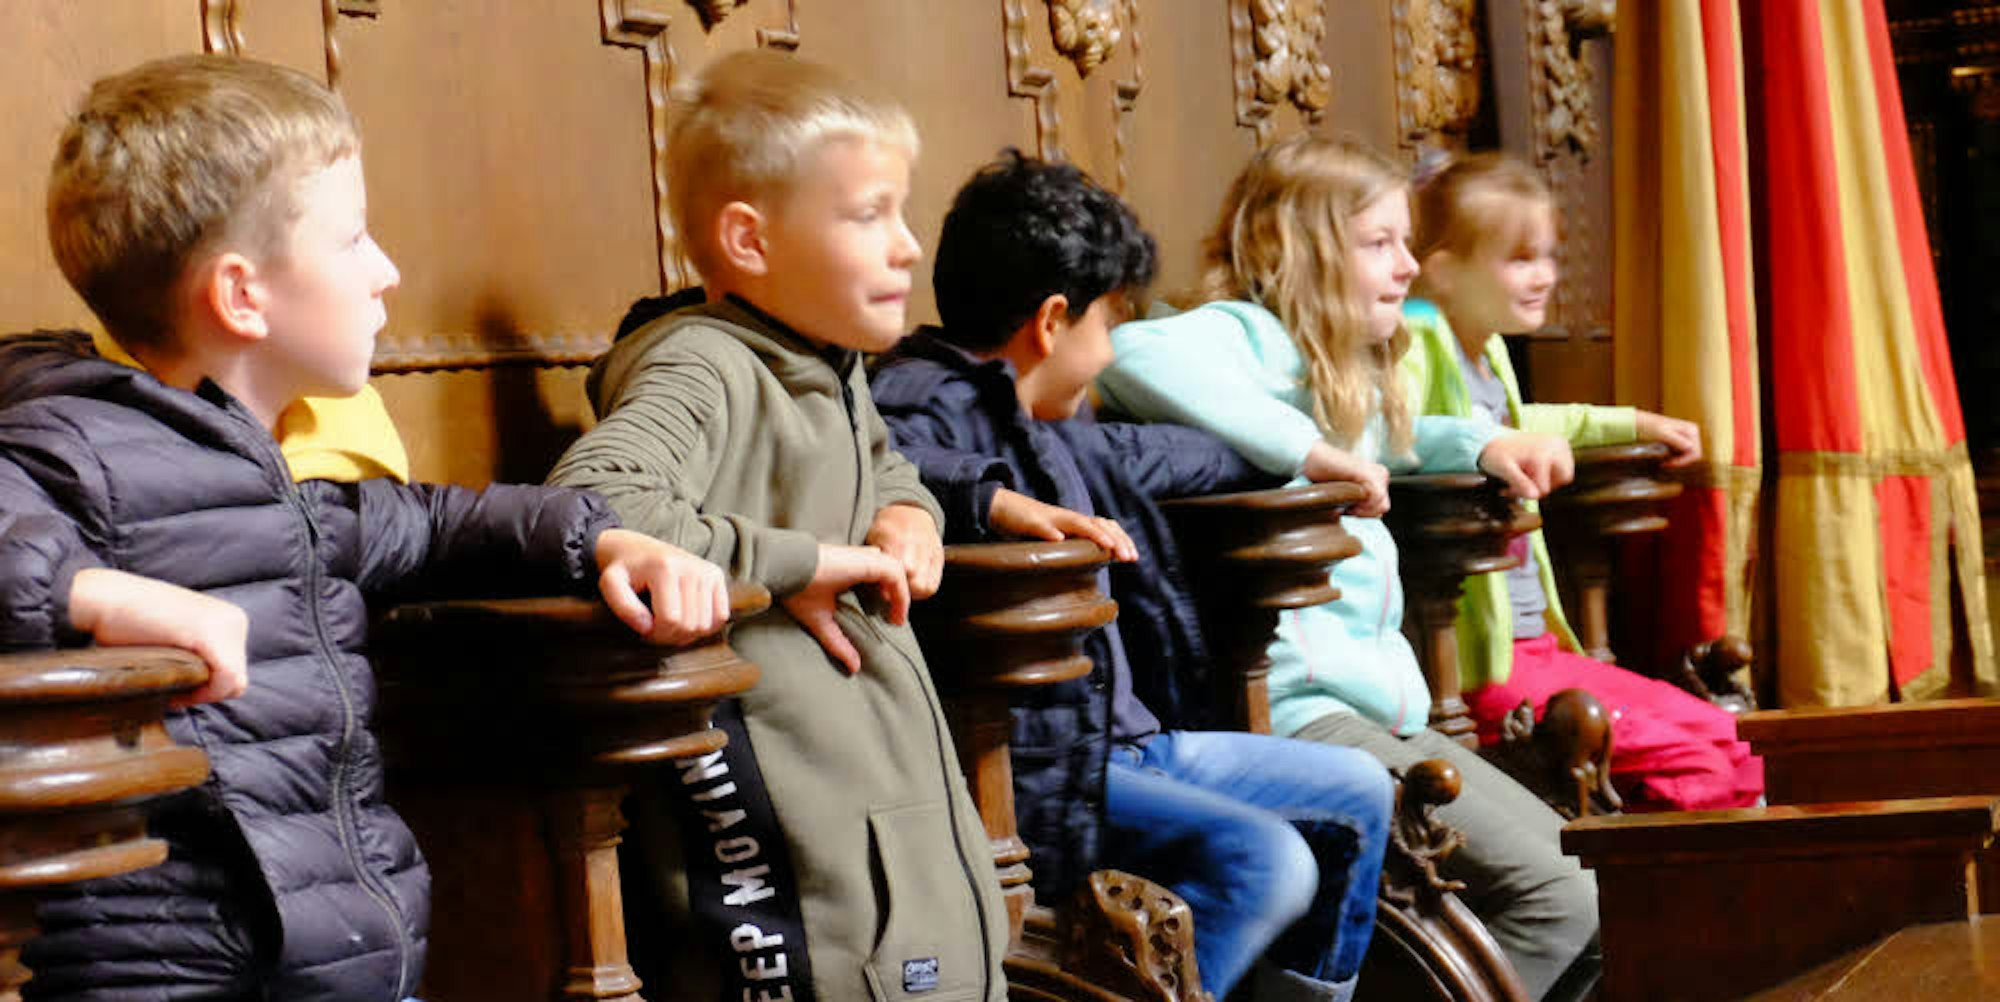 Spaß im Chorgestühl: Die Jungen und Mädchen von der Offenen Ganztagsschule Blankenheim probierten bei der Kirchenführung die Klappsitze im Altarraum der Basilika Steinfeld gerne aus.